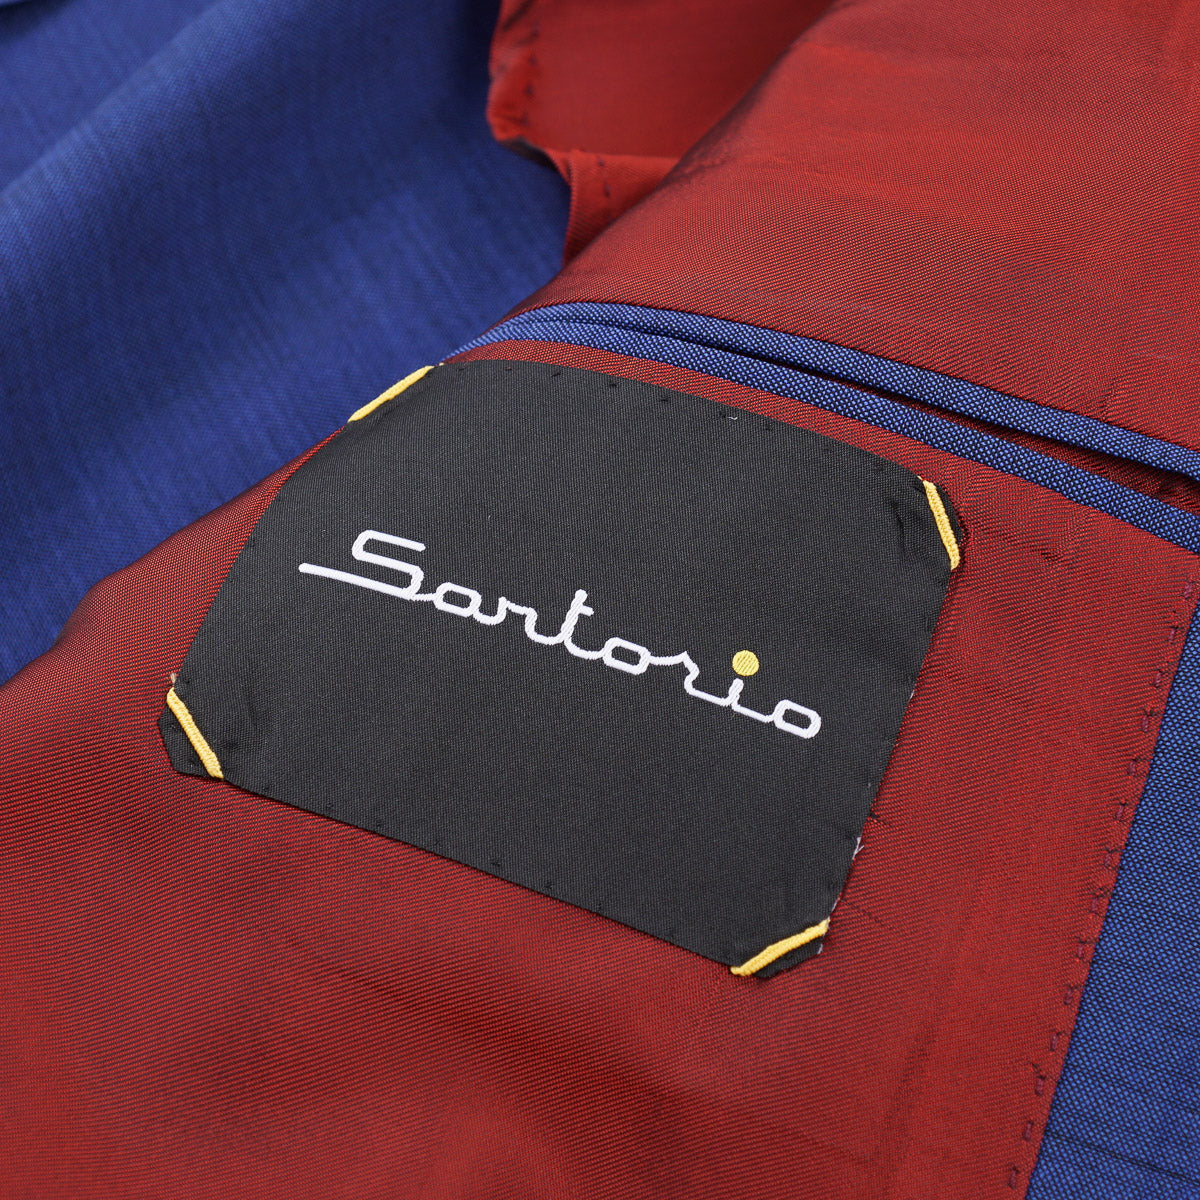 Sartorio Wool Suit with Jogger Pants - Top Shelf Apparel